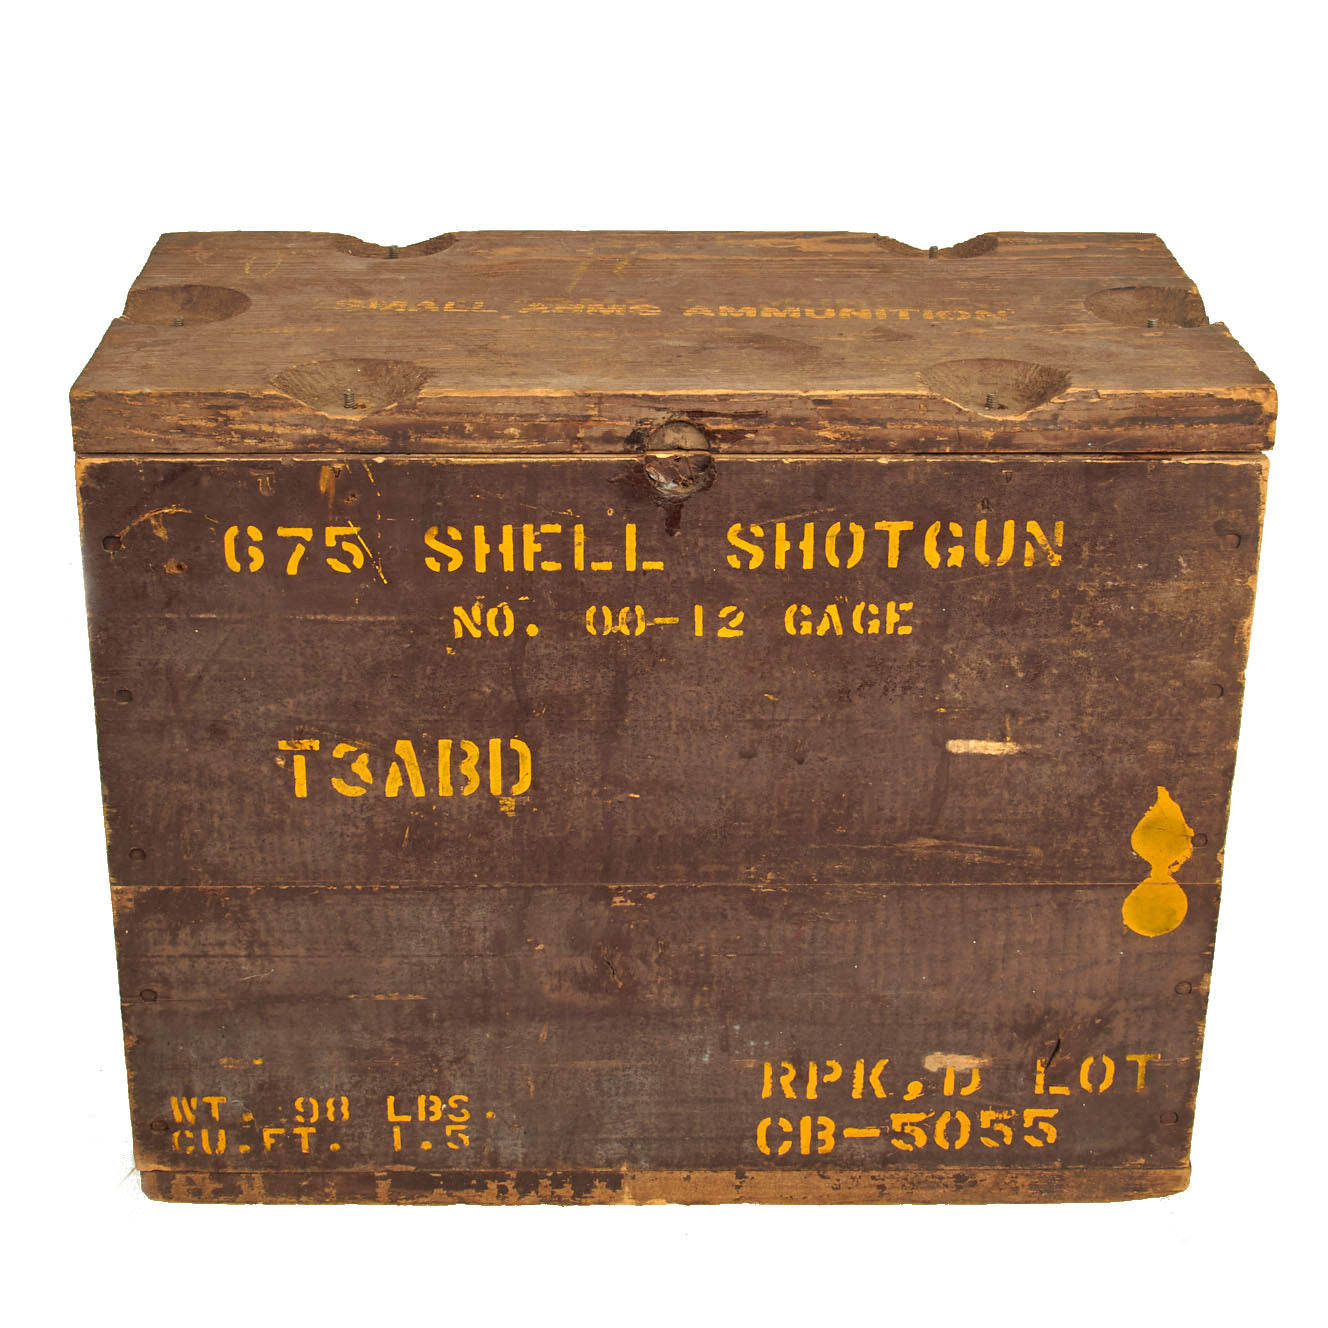 Original WWII U.S. Army Wooden Shotgun T3ABD 12 Gauge No.00